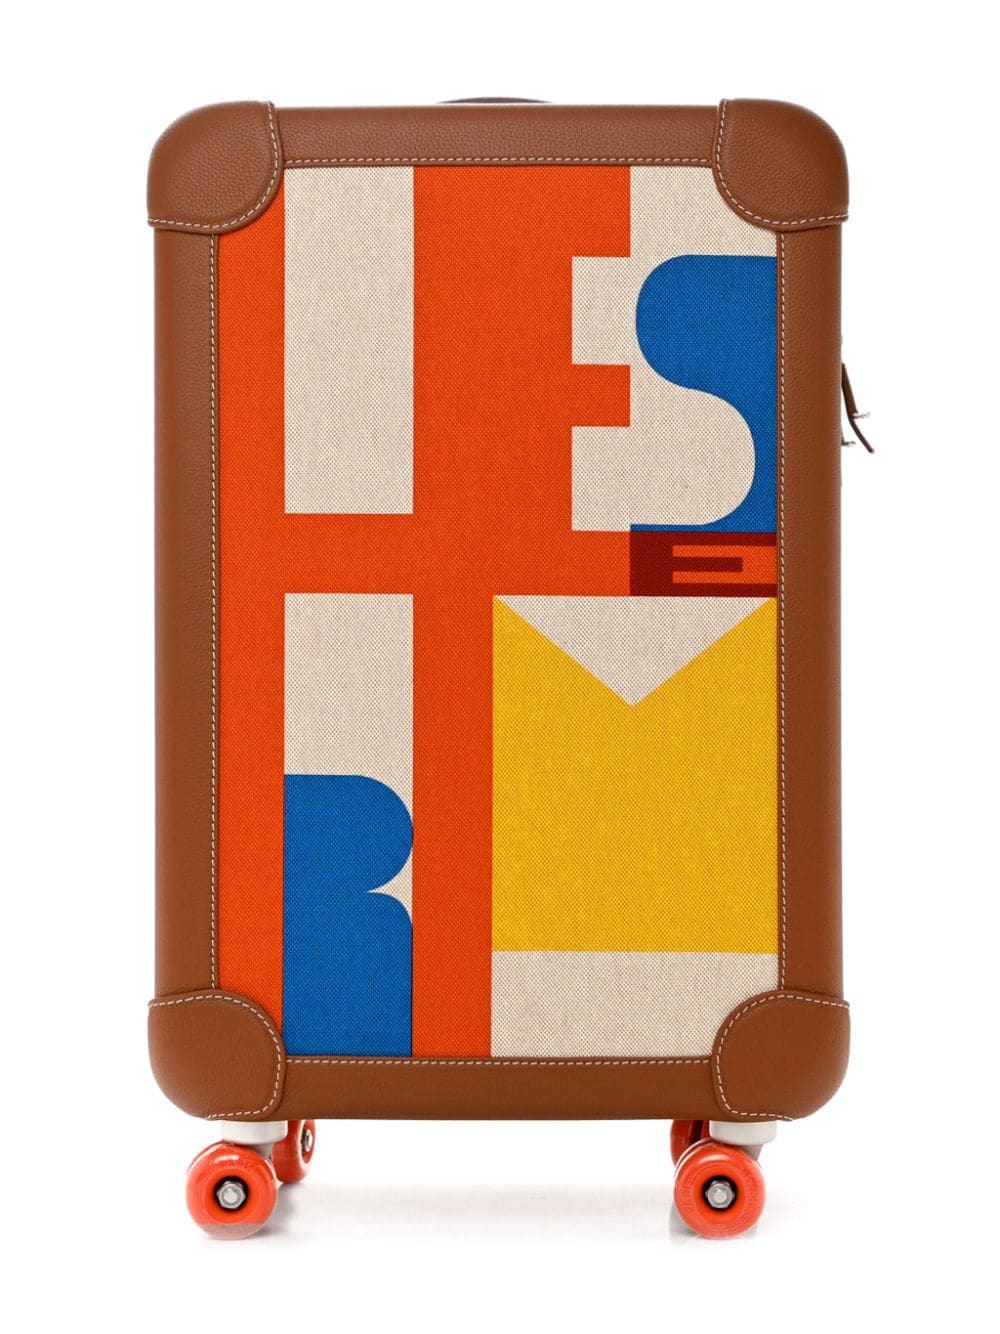 Hermès Pre-Owned R.M.S Trolley rollerbag leather suitcase - Brown von Hermès Pre-Owned